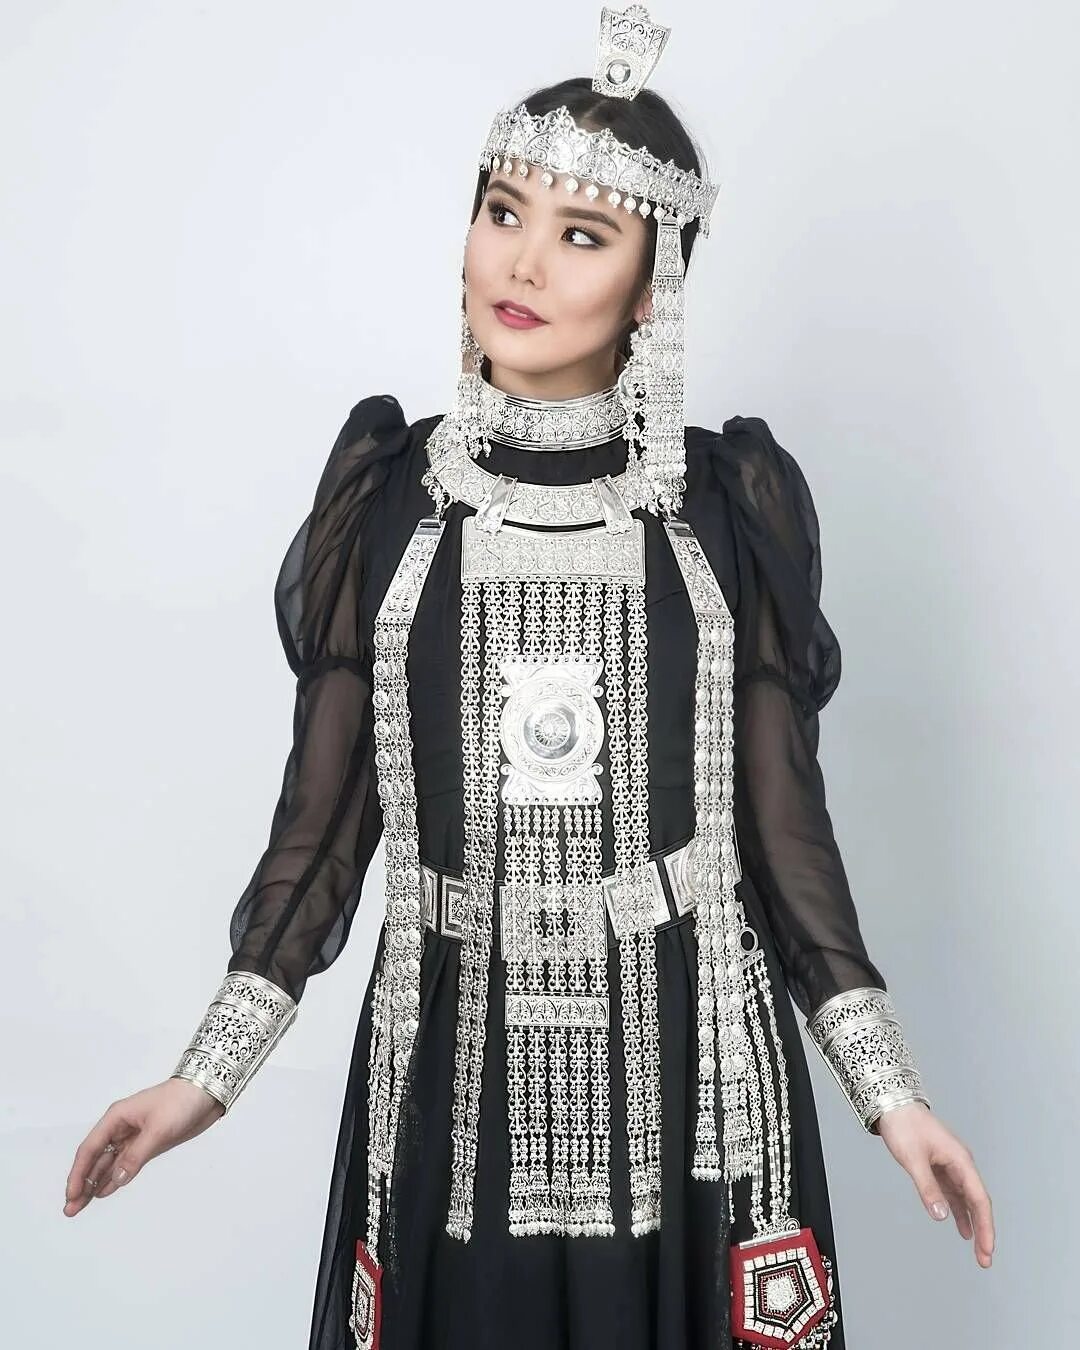 Якутская Национальная одежда халадай. Илин-кэлин кэбиhэр. Якутский халадаай. Национальный костюм Саха якутов.